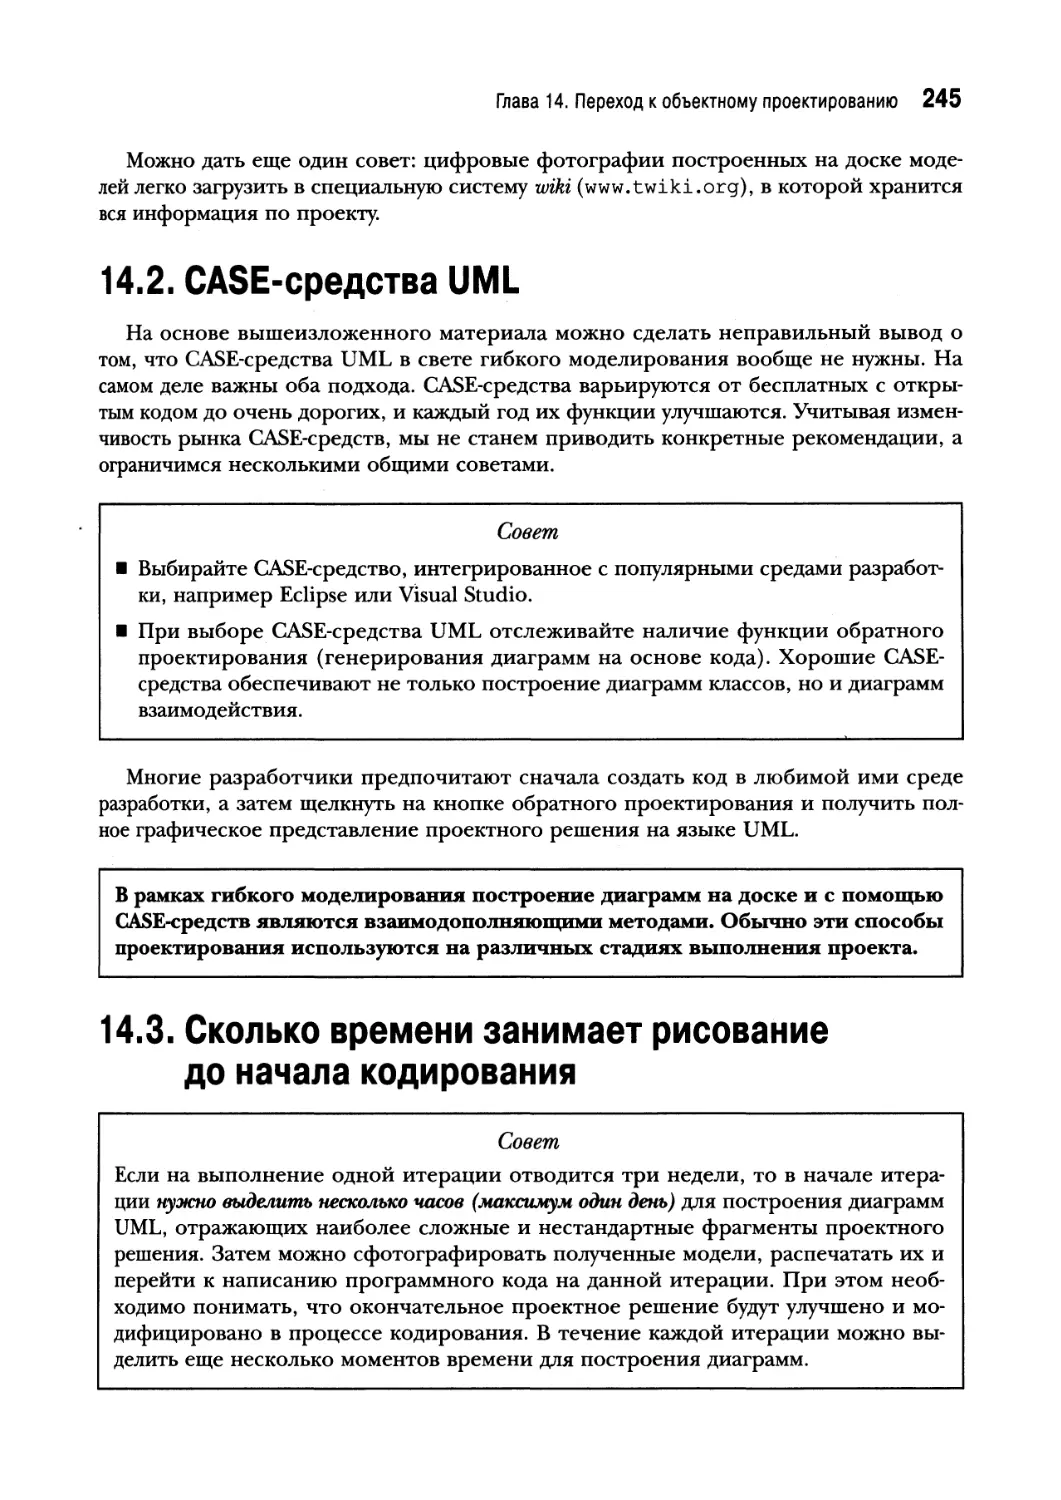 14.2. CASE-средства UML
14.3. Сколько времени занимает рисование до начала кодирования